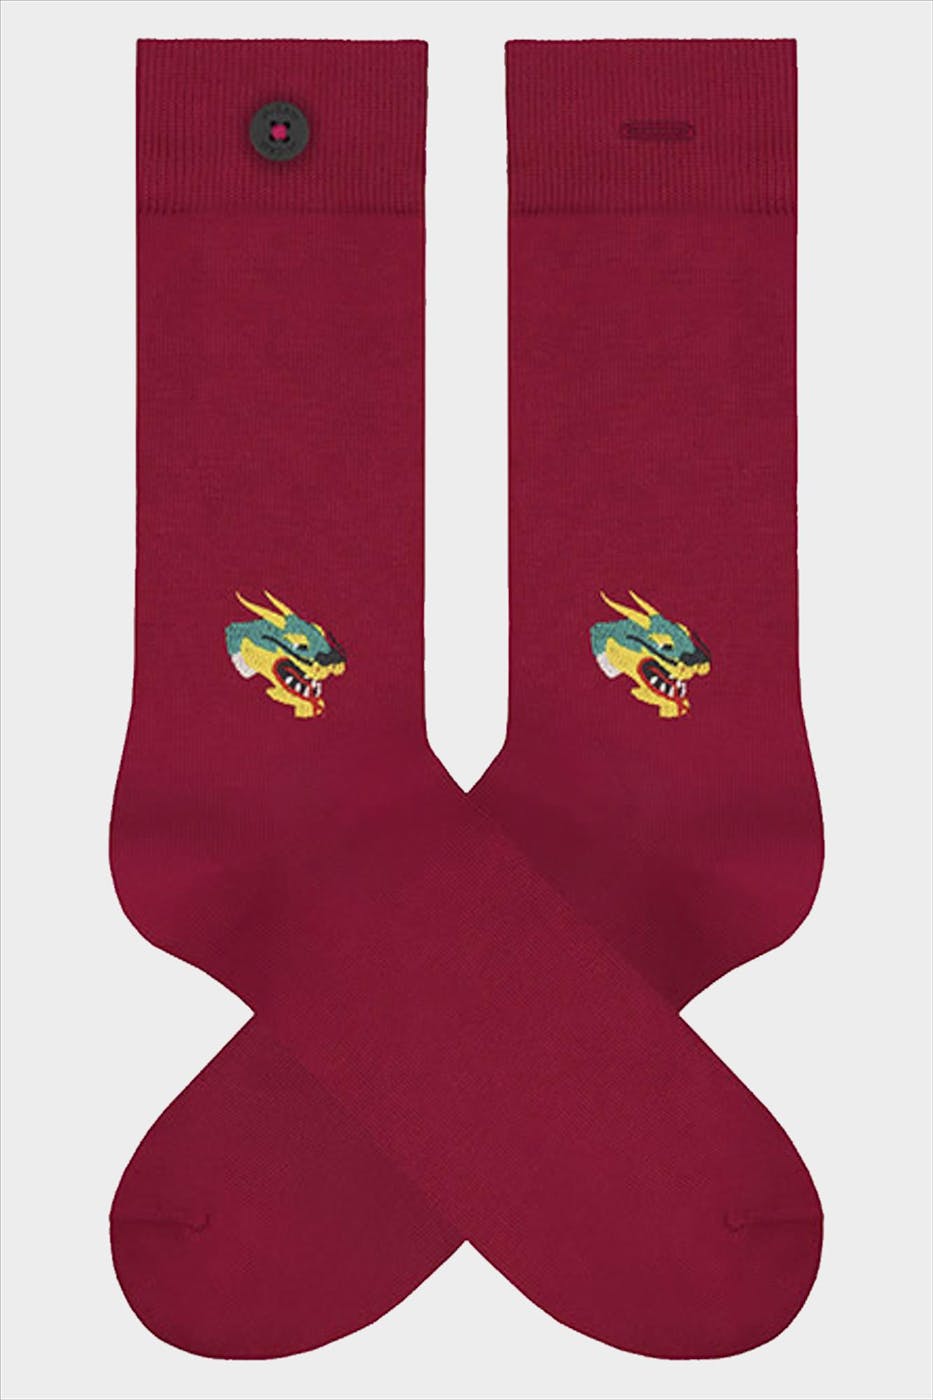 A'dam - Rode Drogo sokken, maat: 36-40